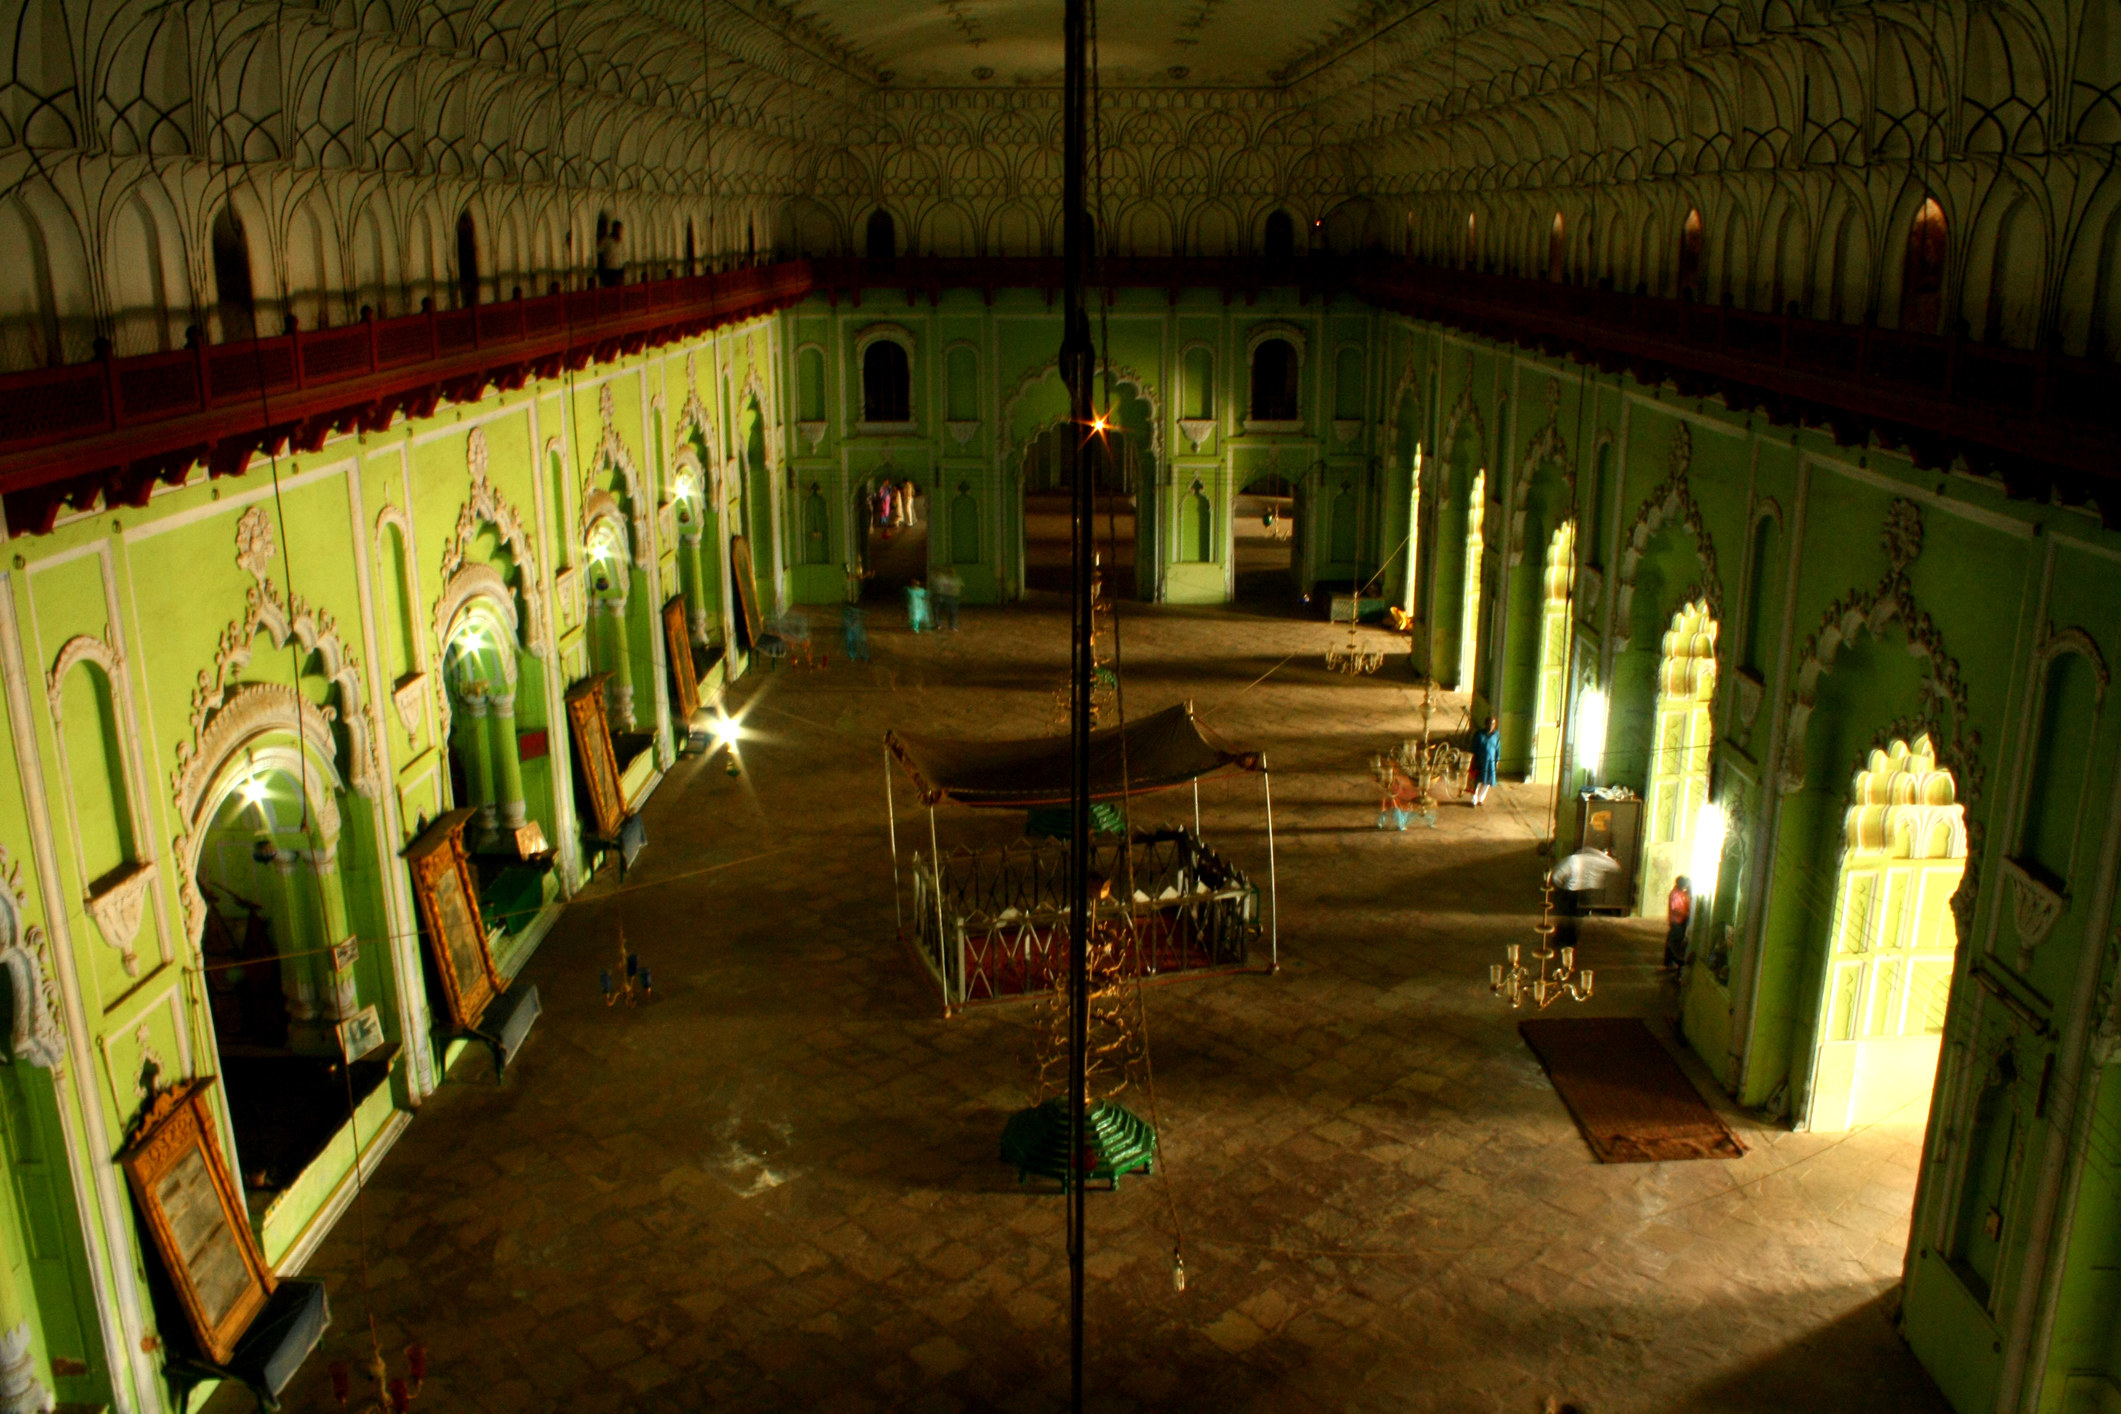 The interiors of the Bara Imambara